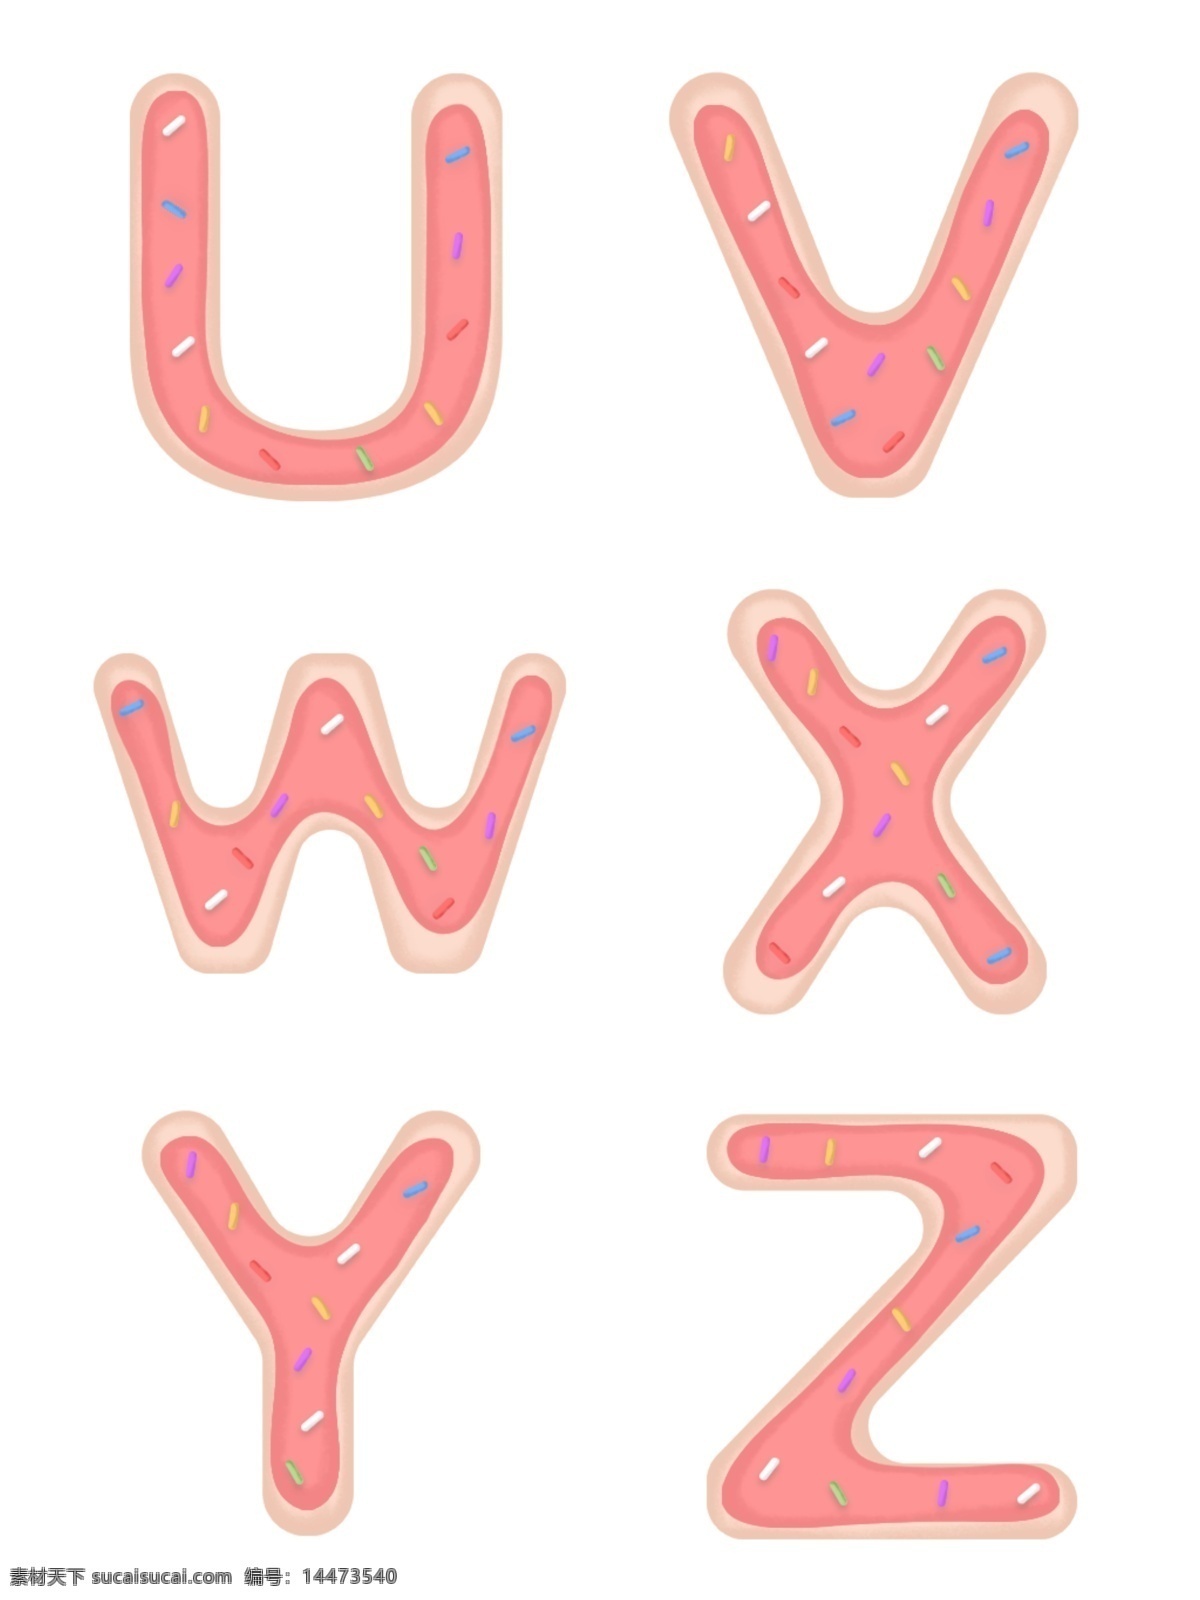 手绘 个性 可爱 糖衣 英文 字母 元素 糖果字母 可爱字母 饼干字母 个性字母 创意字母 糖衣字母 节日英文字母